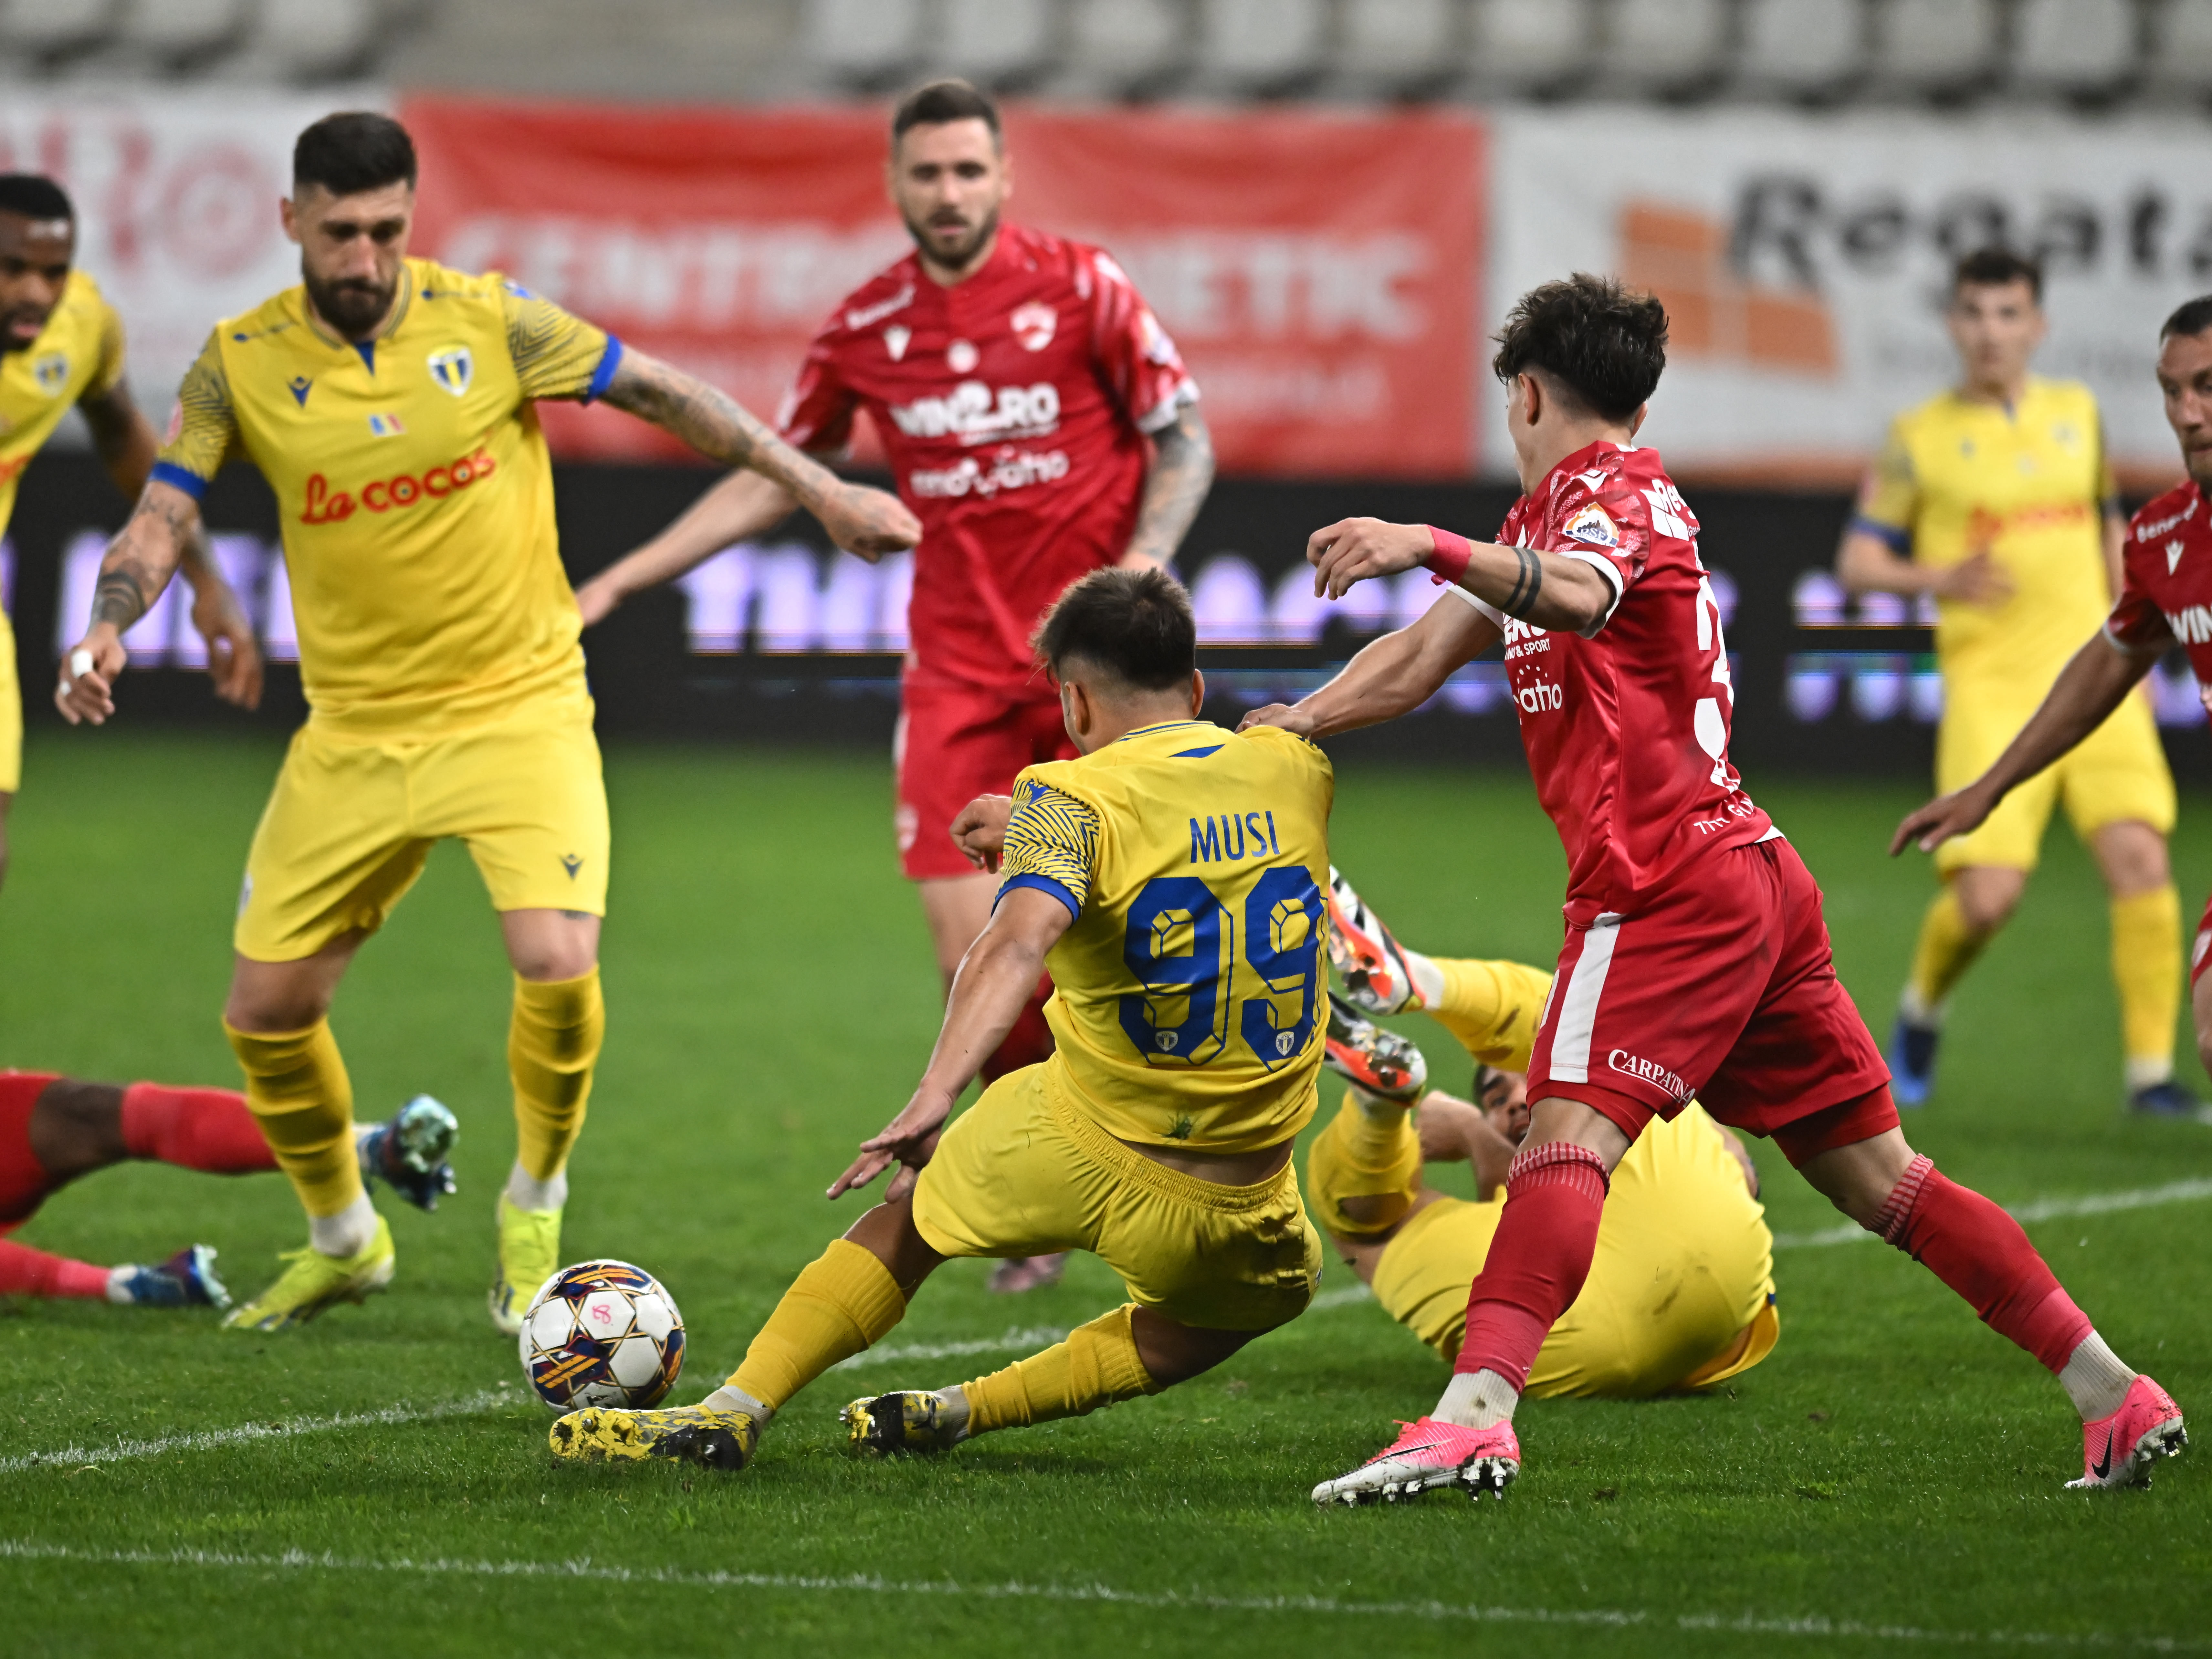 Ionuț Amzăr a răbufnit, după ce Dinamo a fost egalată în minutul 90+13: ”Să ne lase să ne arbitrăm singuri”